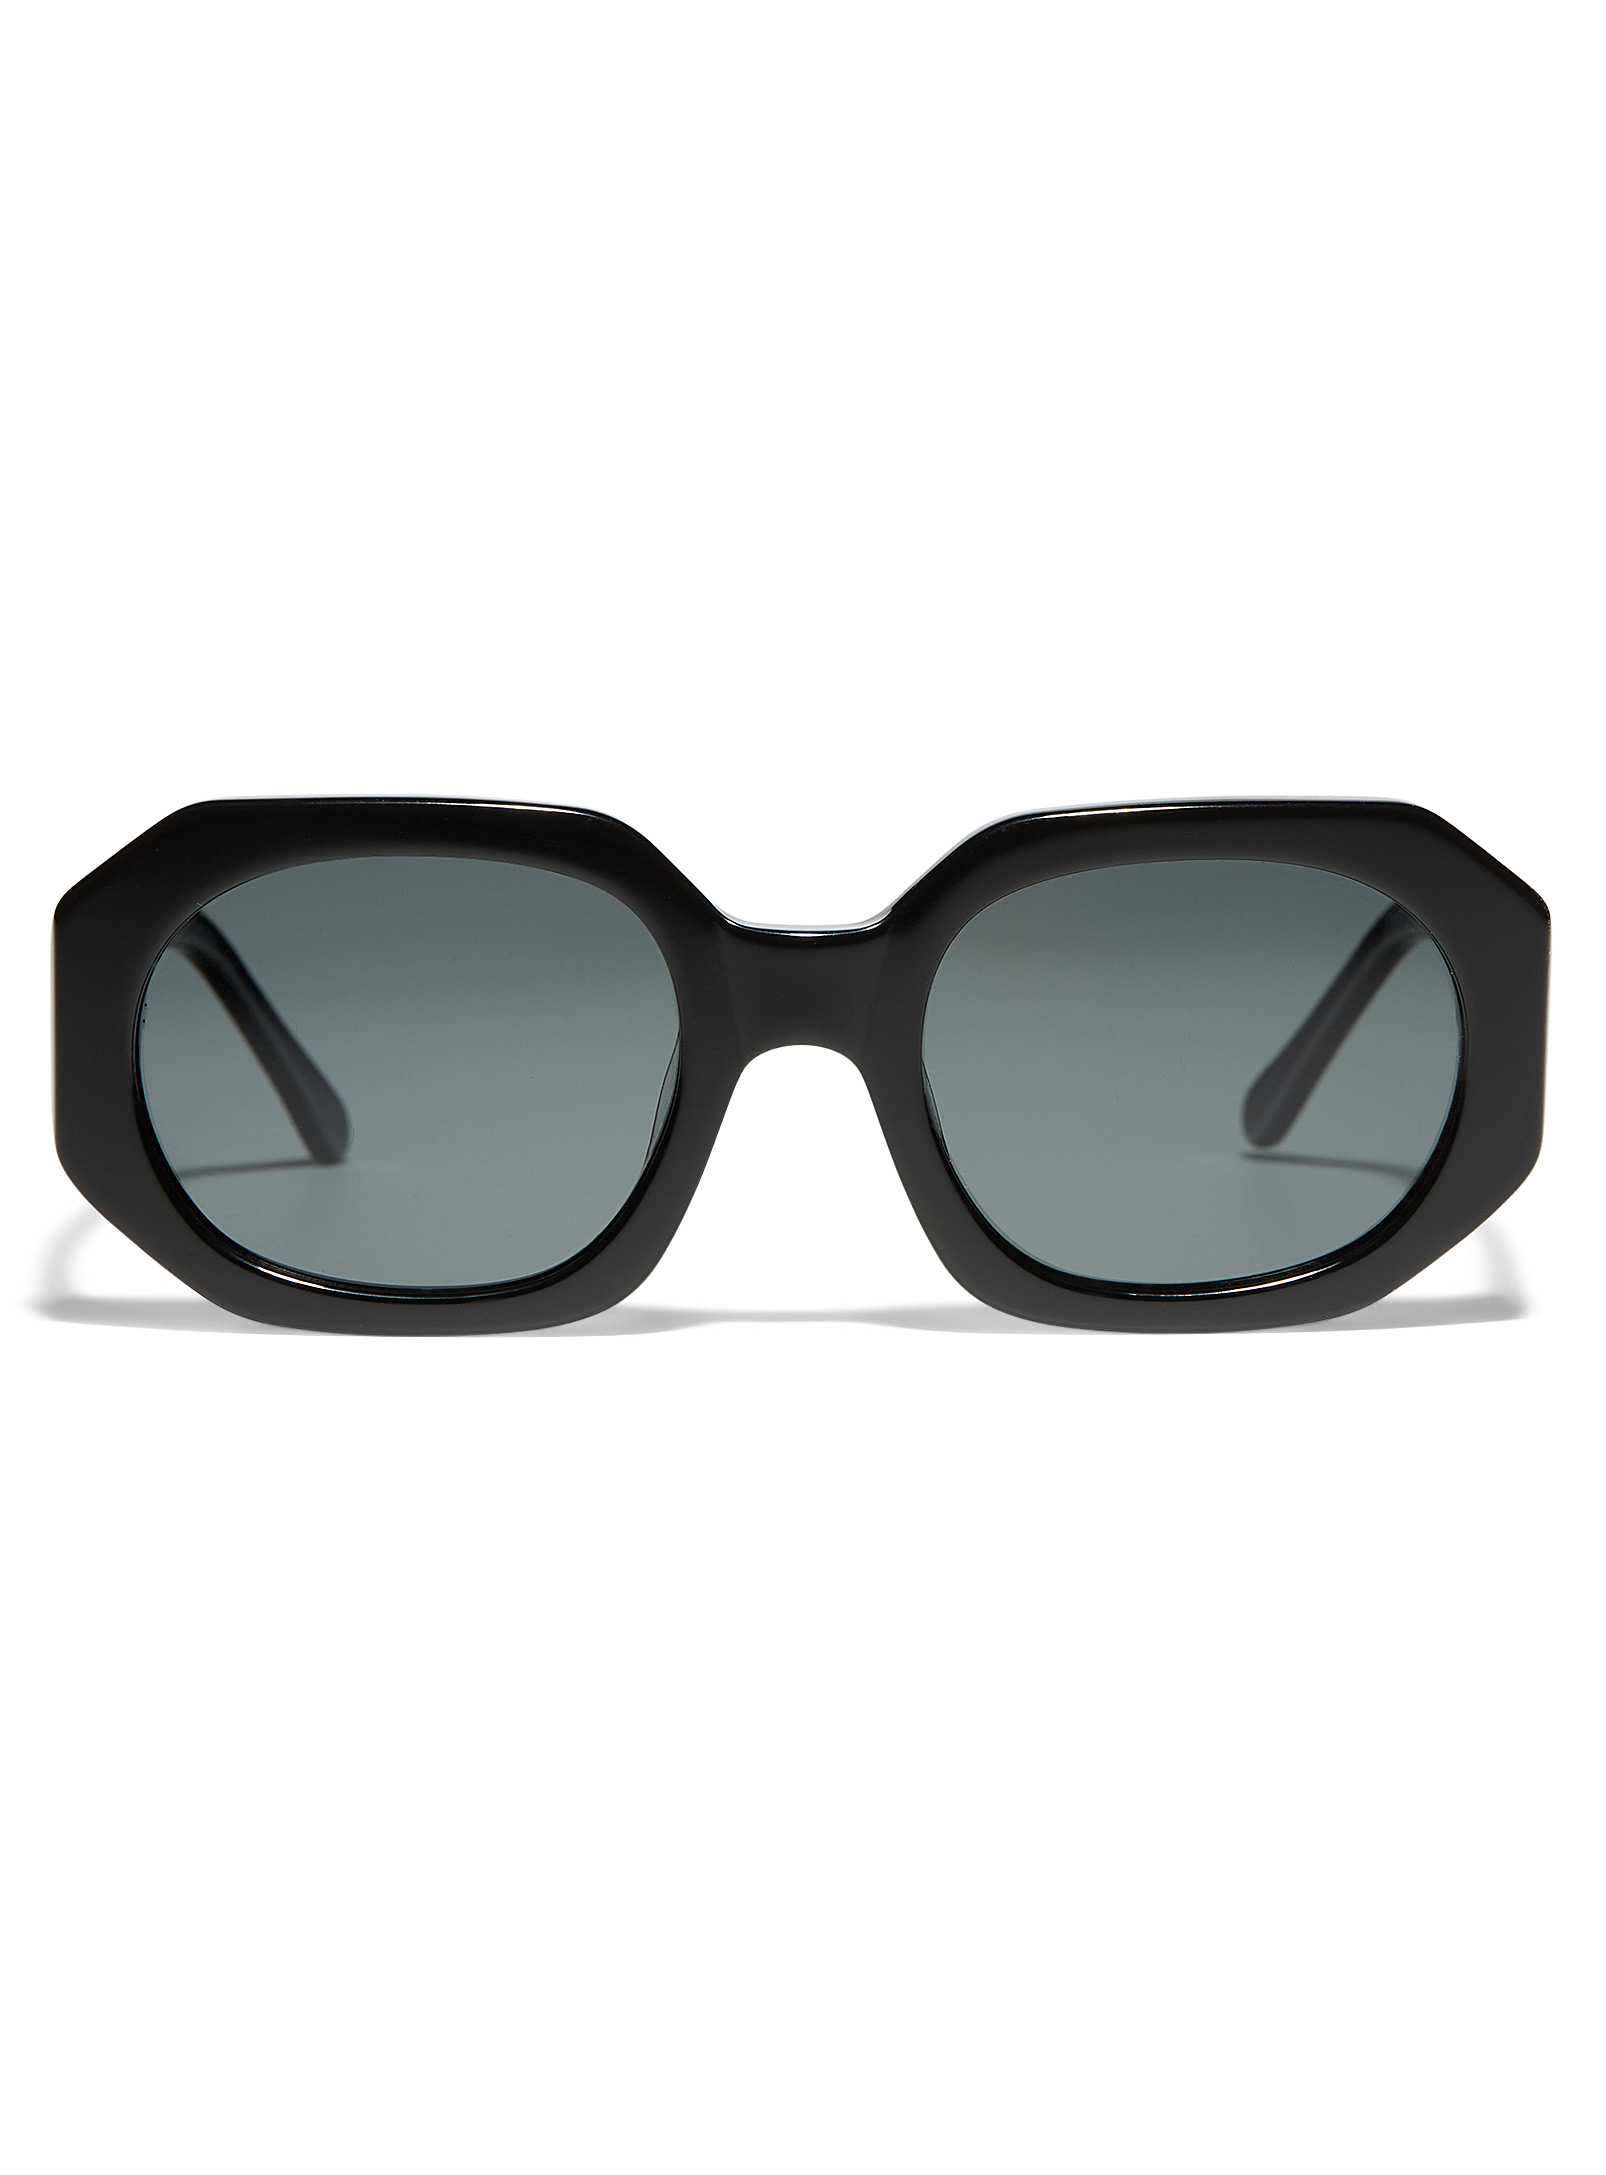 Mize Modern Geometric Sunglasses In Black